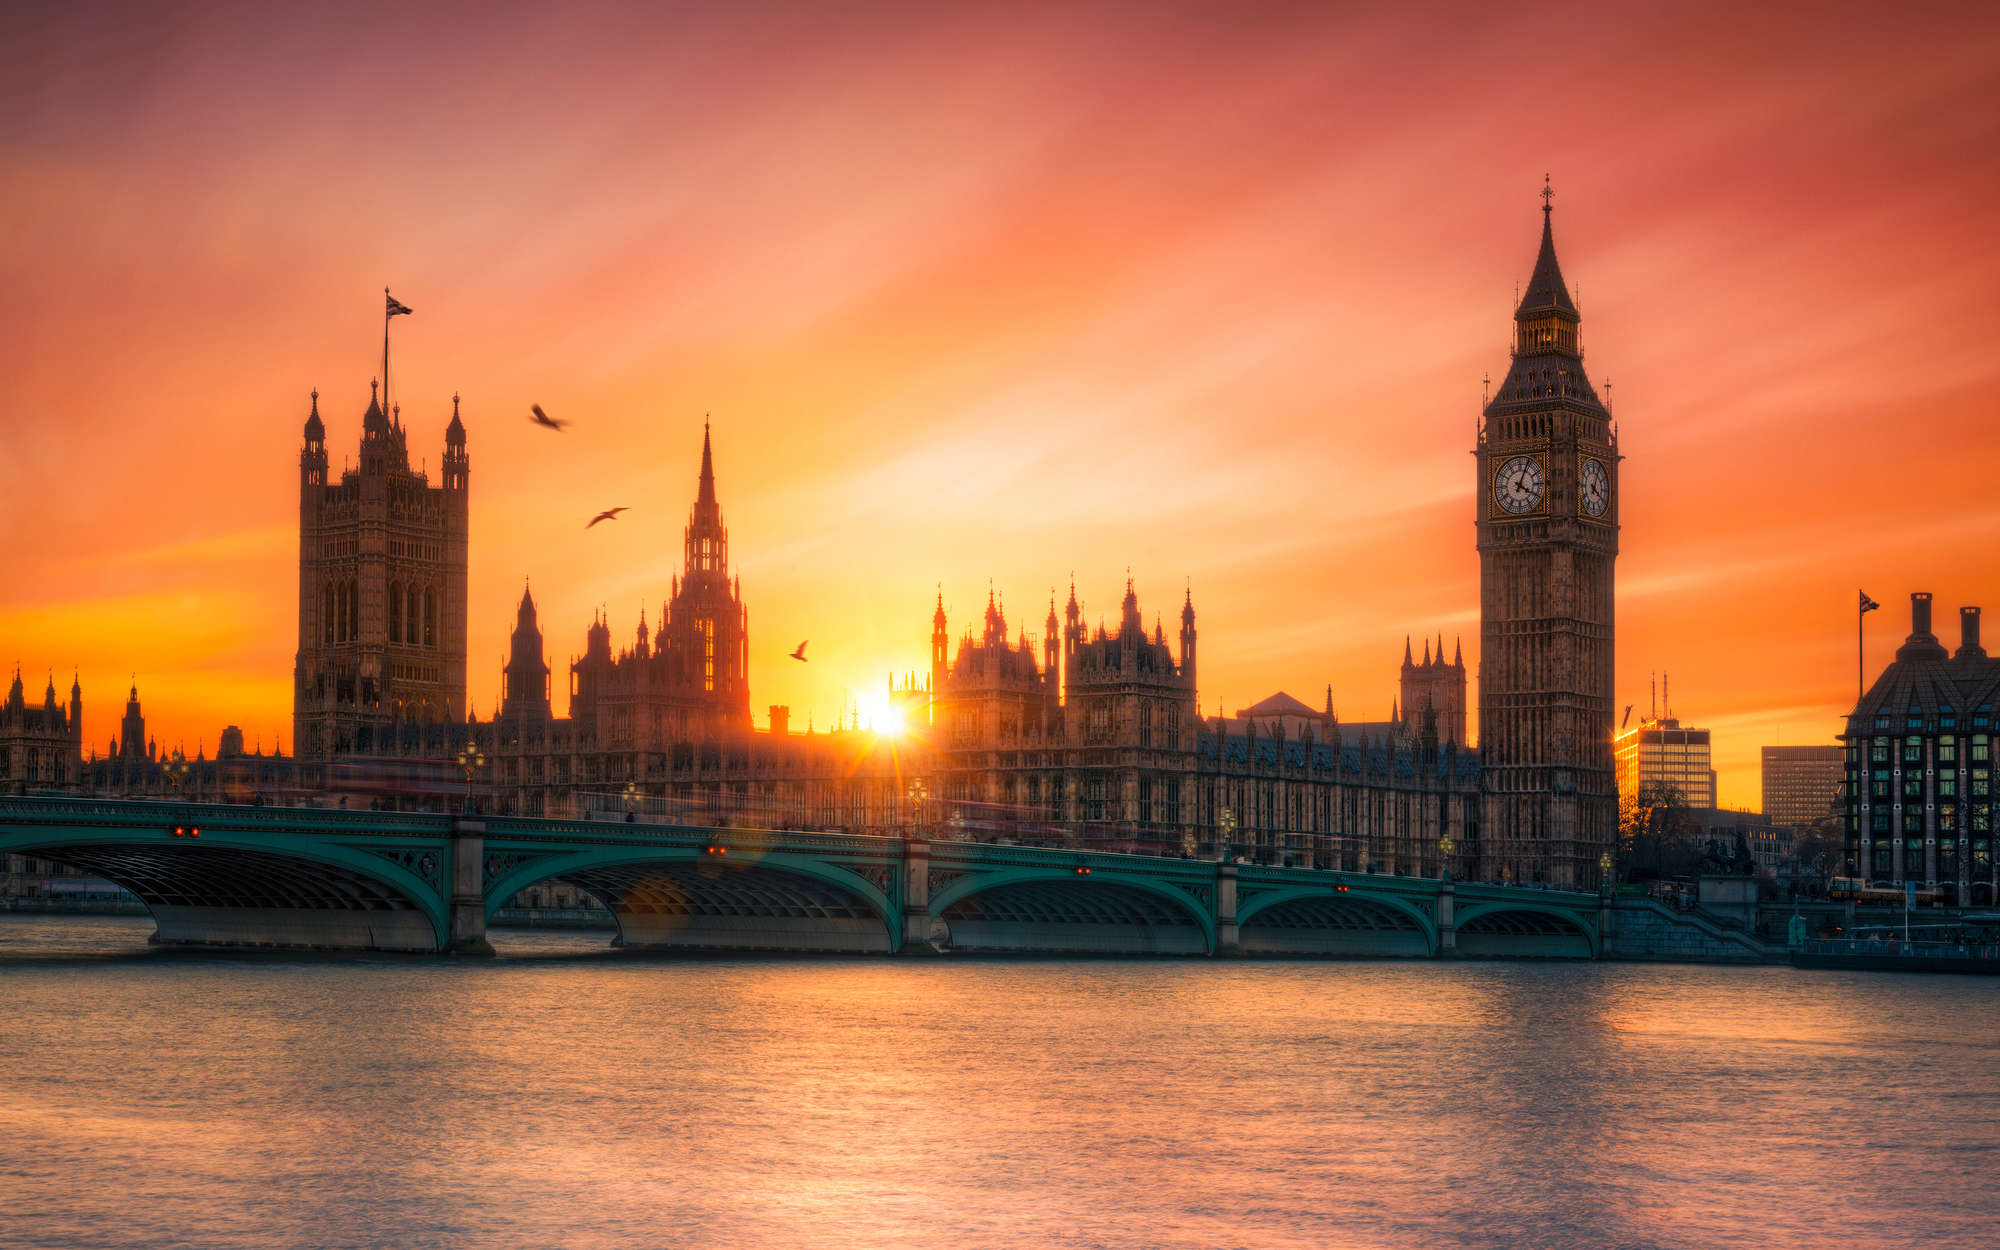             Digital behang Londen skyline bij zonsondergang - mat glad vlies
        